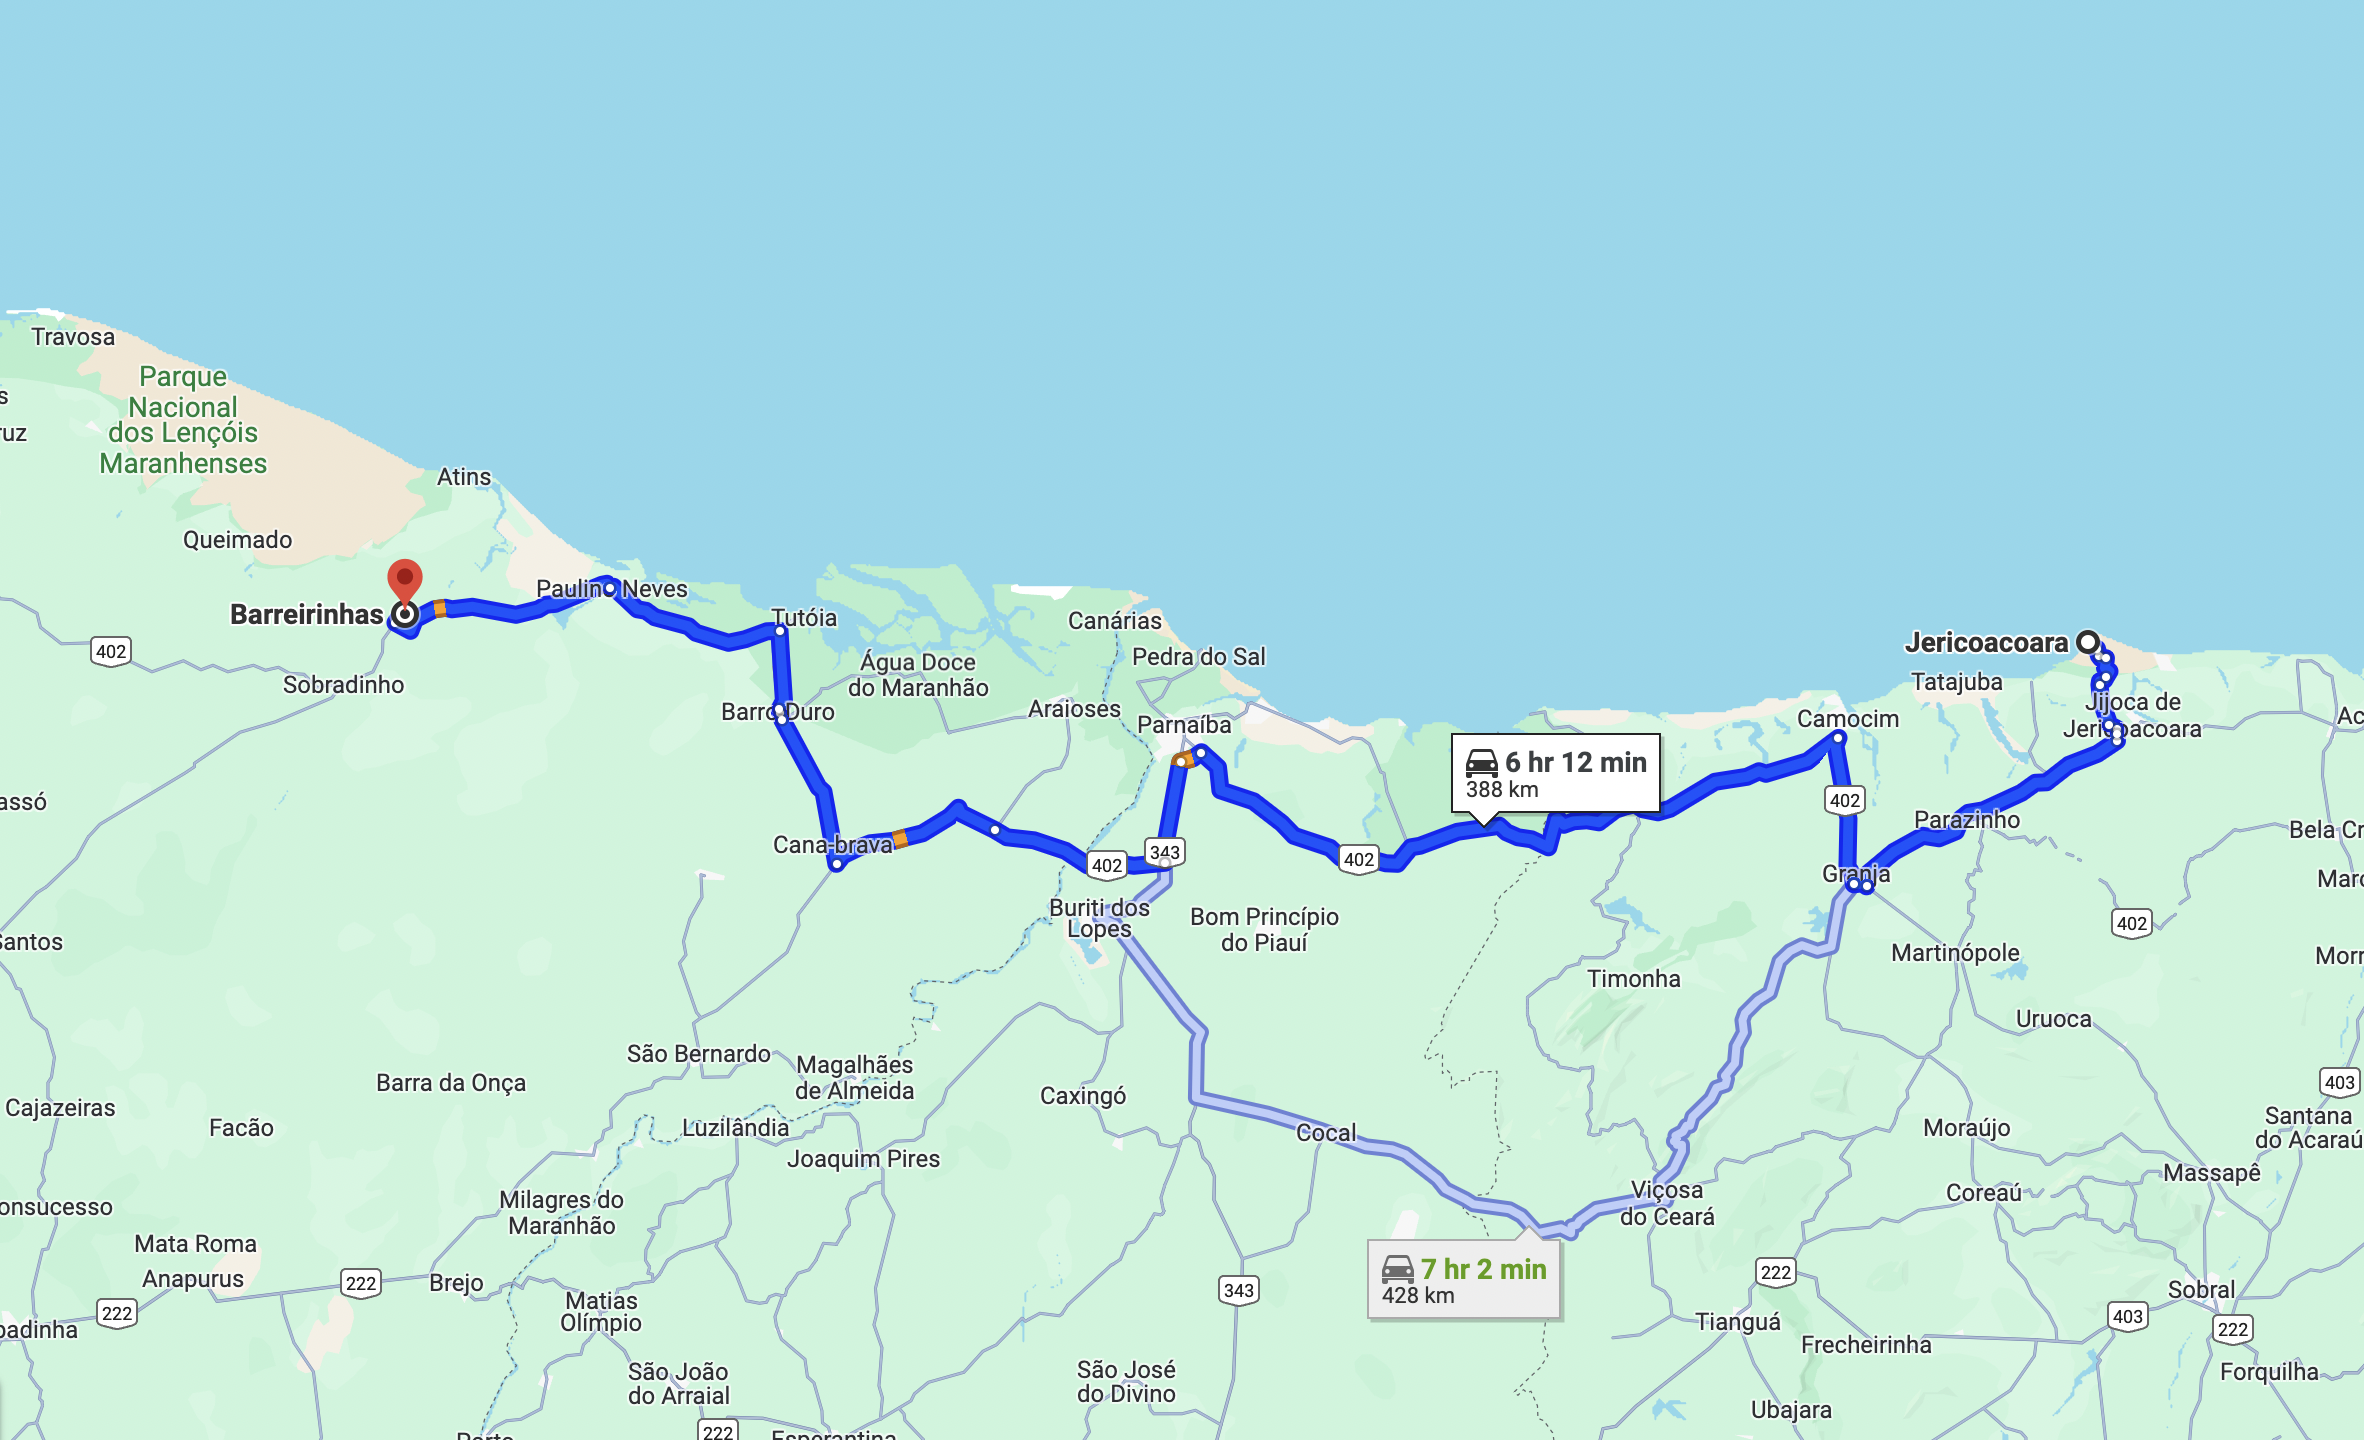 How to get to Barreirinhas from Jericoacoara? - Maps